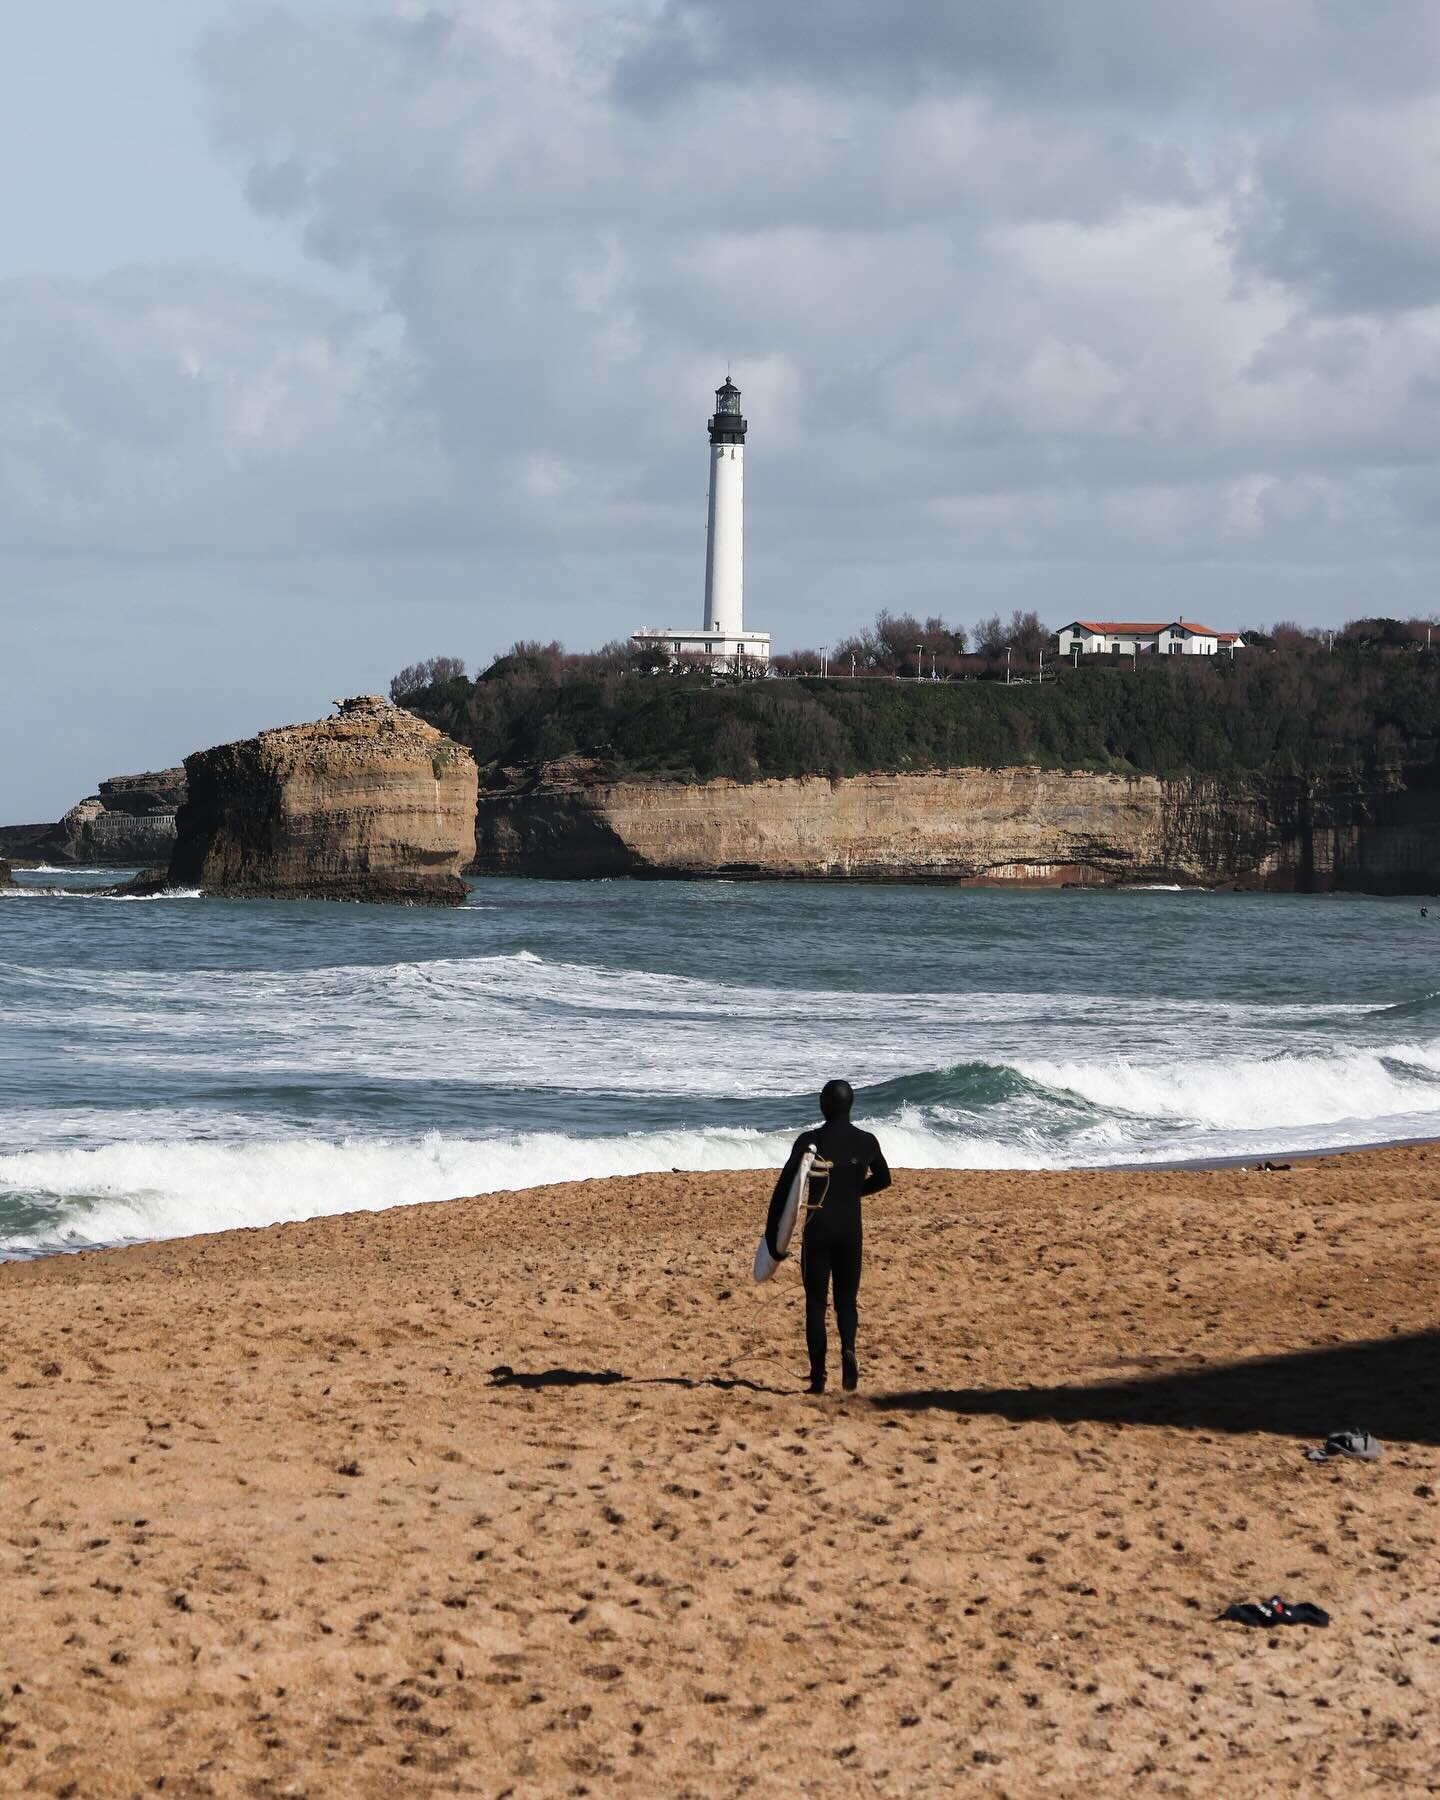 📍Biarritz 
Souvenir d&rsquo;un autre week-end, on aime Biarritz son ambiance cool et surf !

Bon lundi